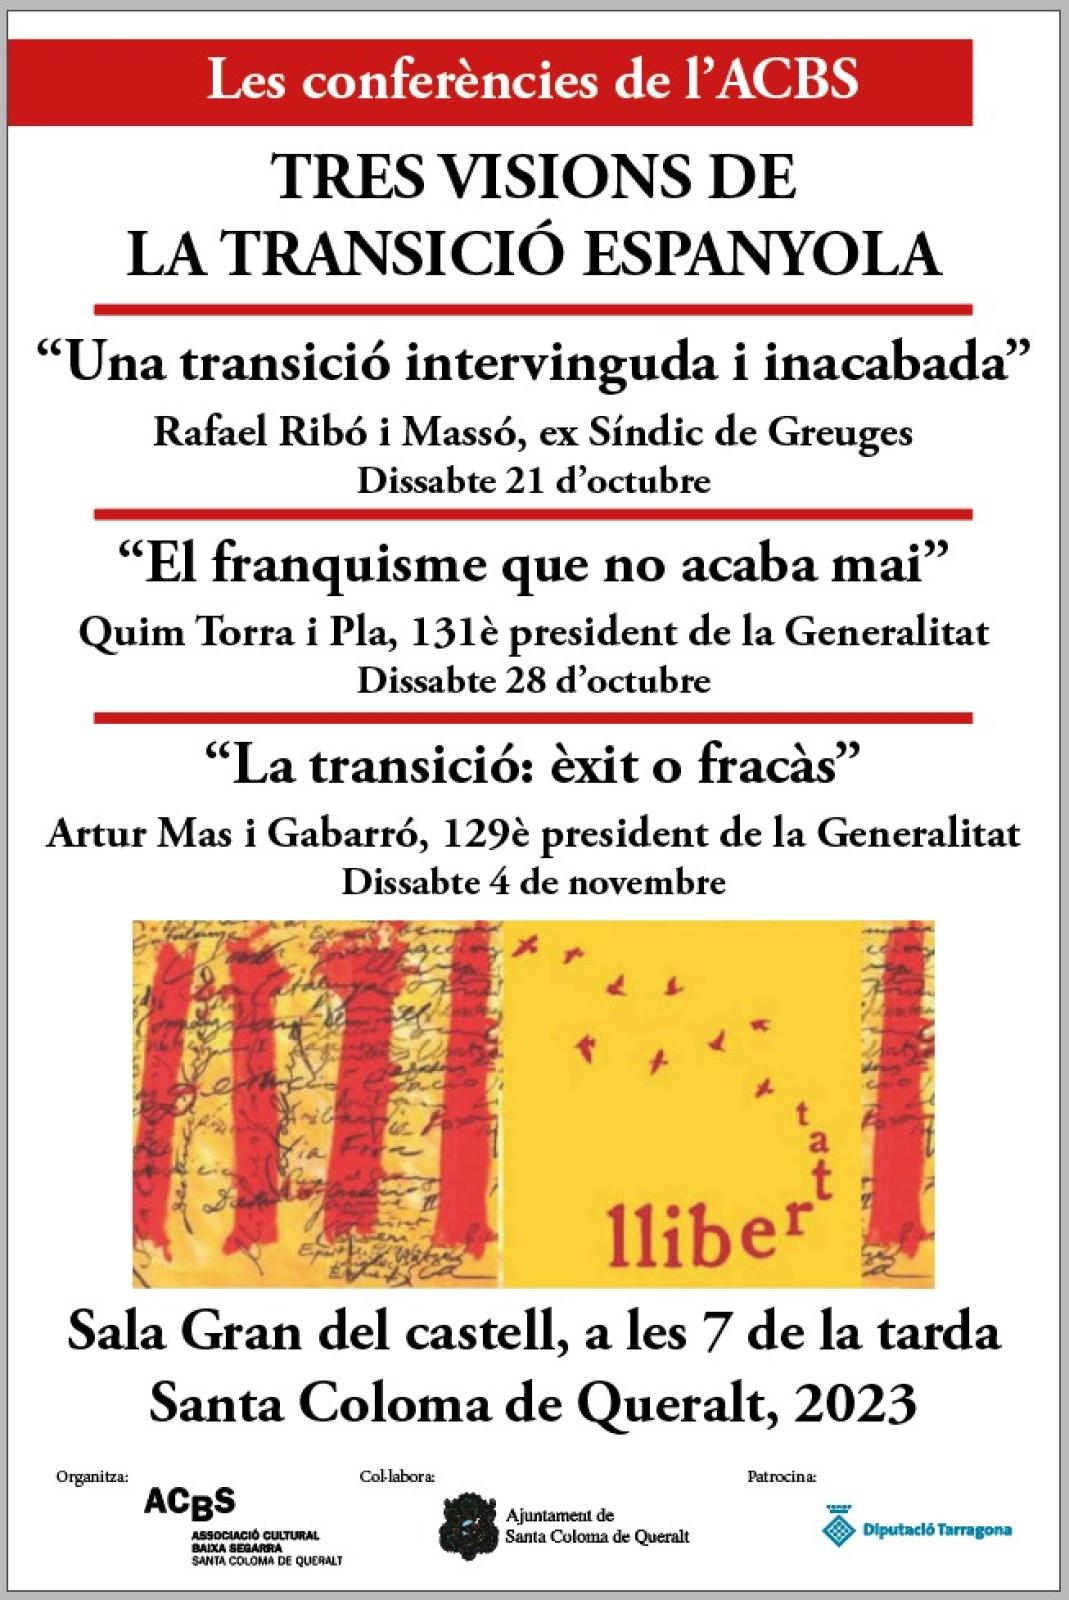 cartell Les conferències de l'ACBS: 'El franquisme que no acaba mai' a càrrec de Quim Torra i Pla, 131è president de la Generalitat